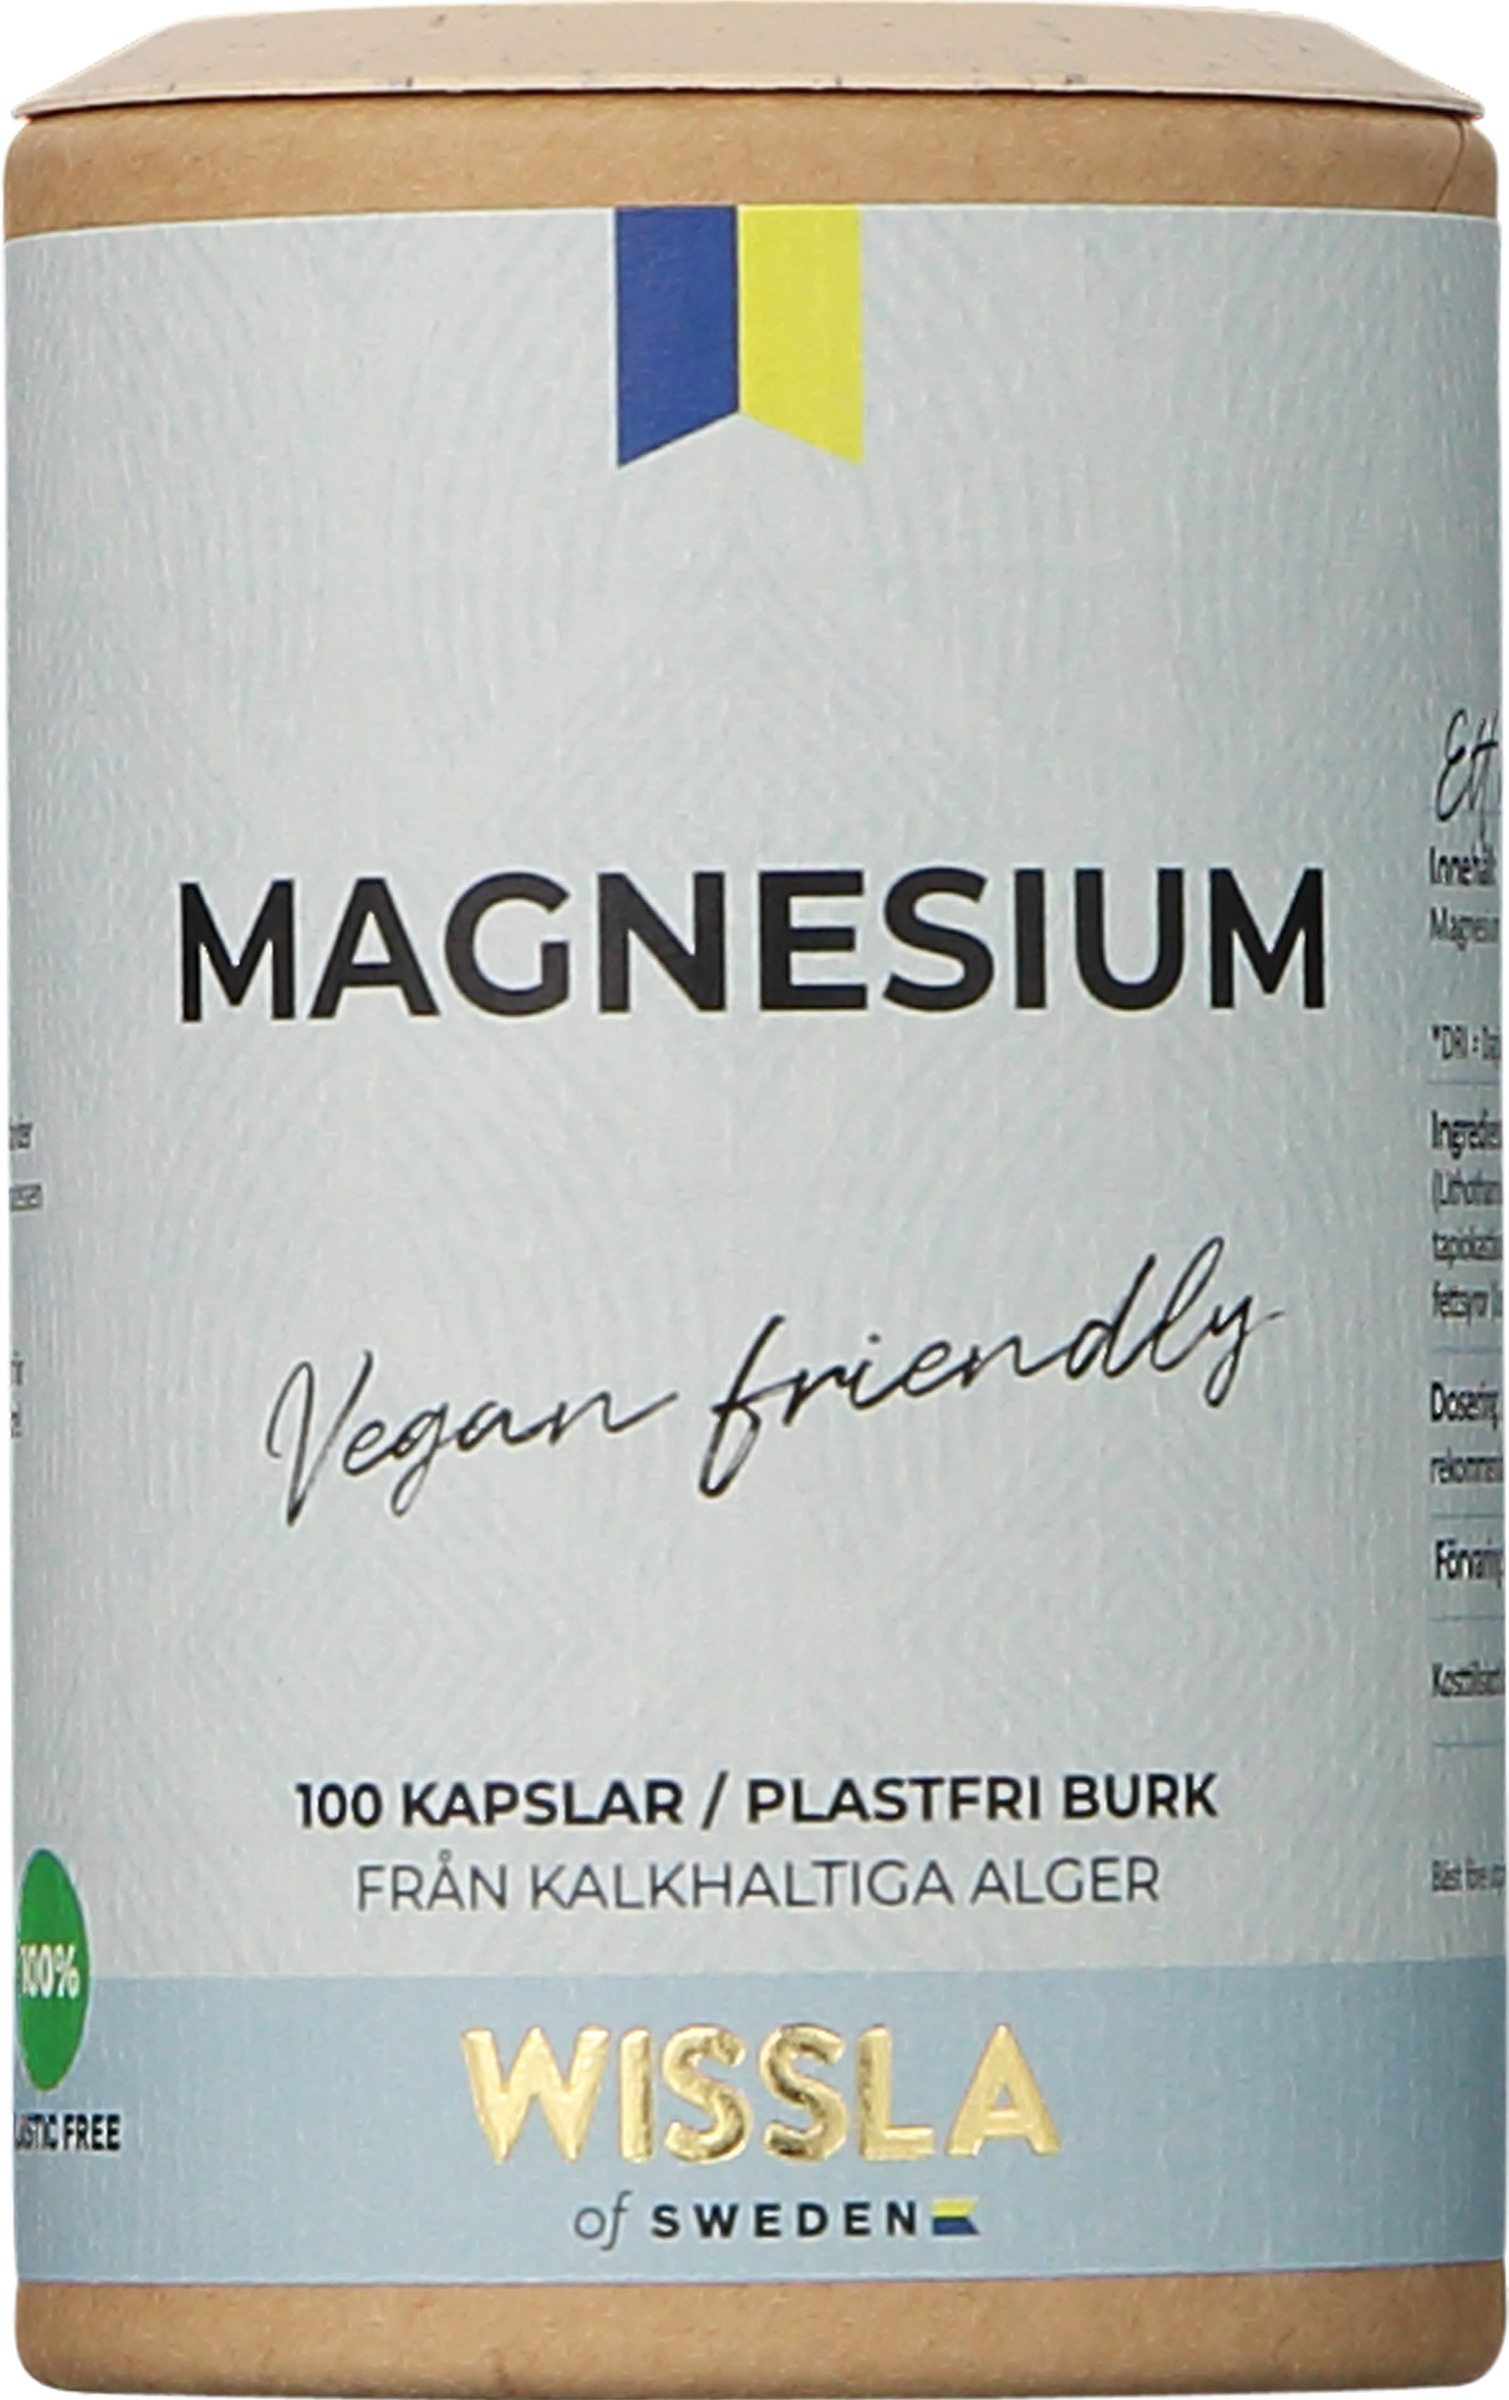 Wissla of Sweden Magnesium 100 kapslar